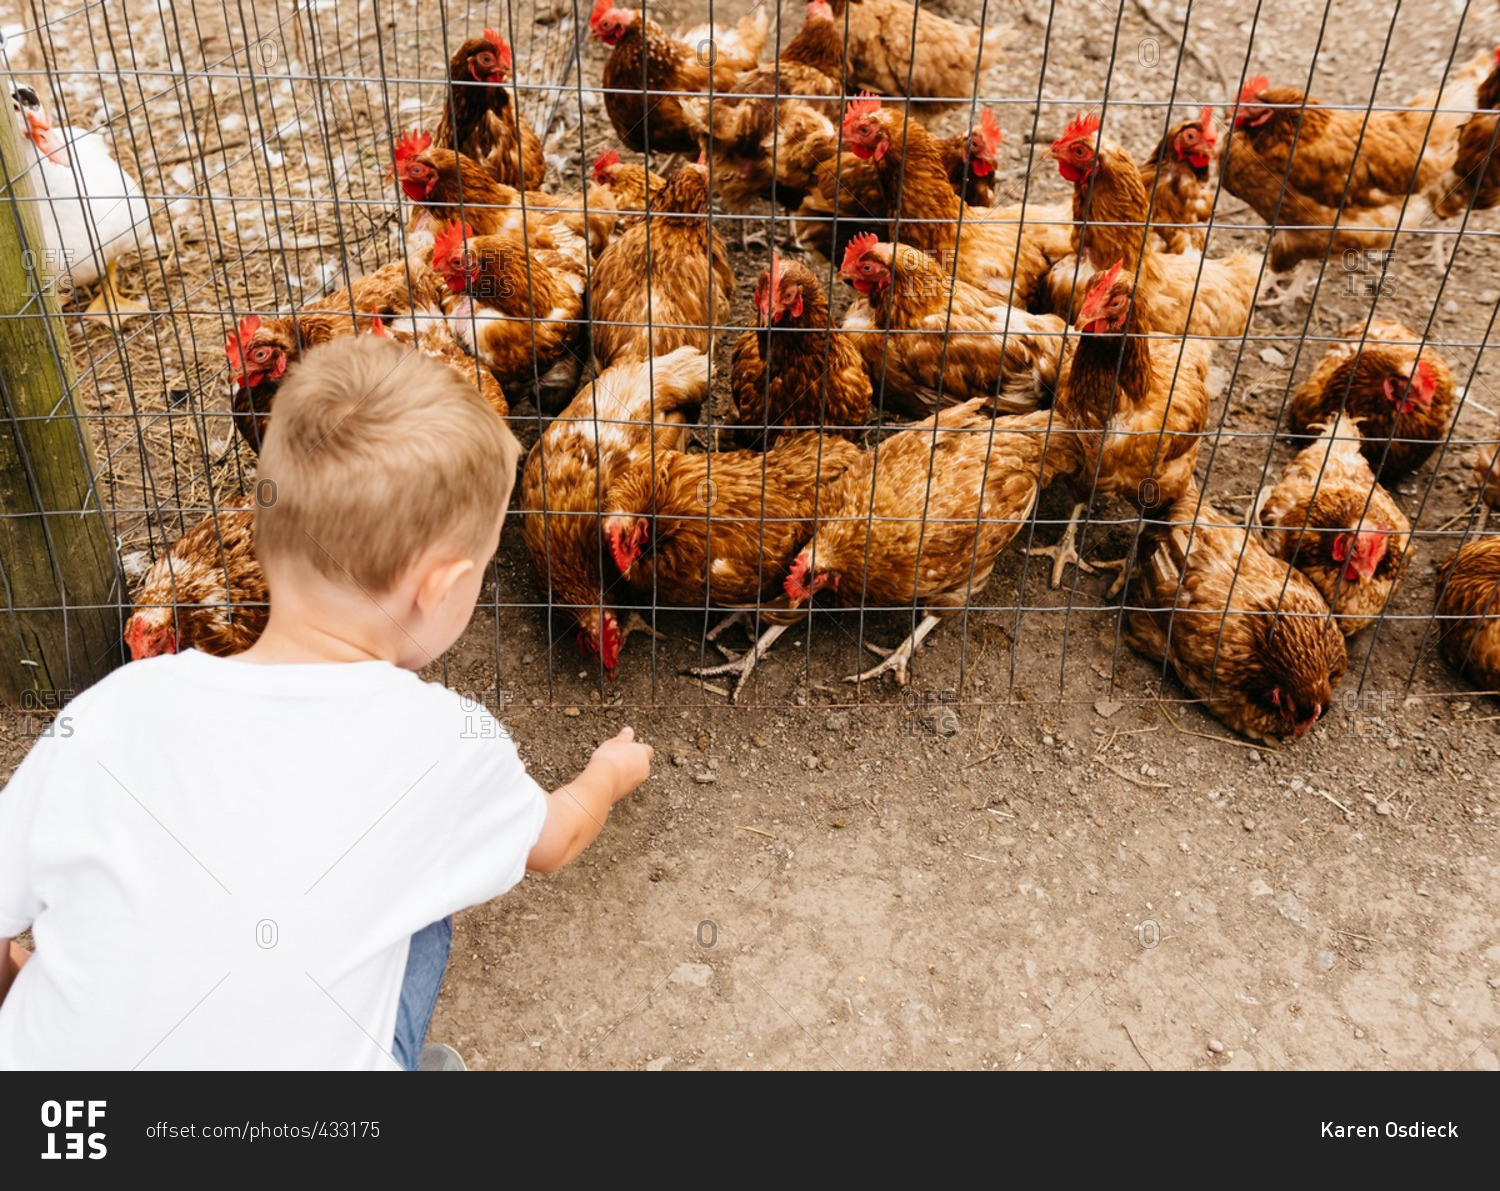 Young boy feeding chickens in pen on farm